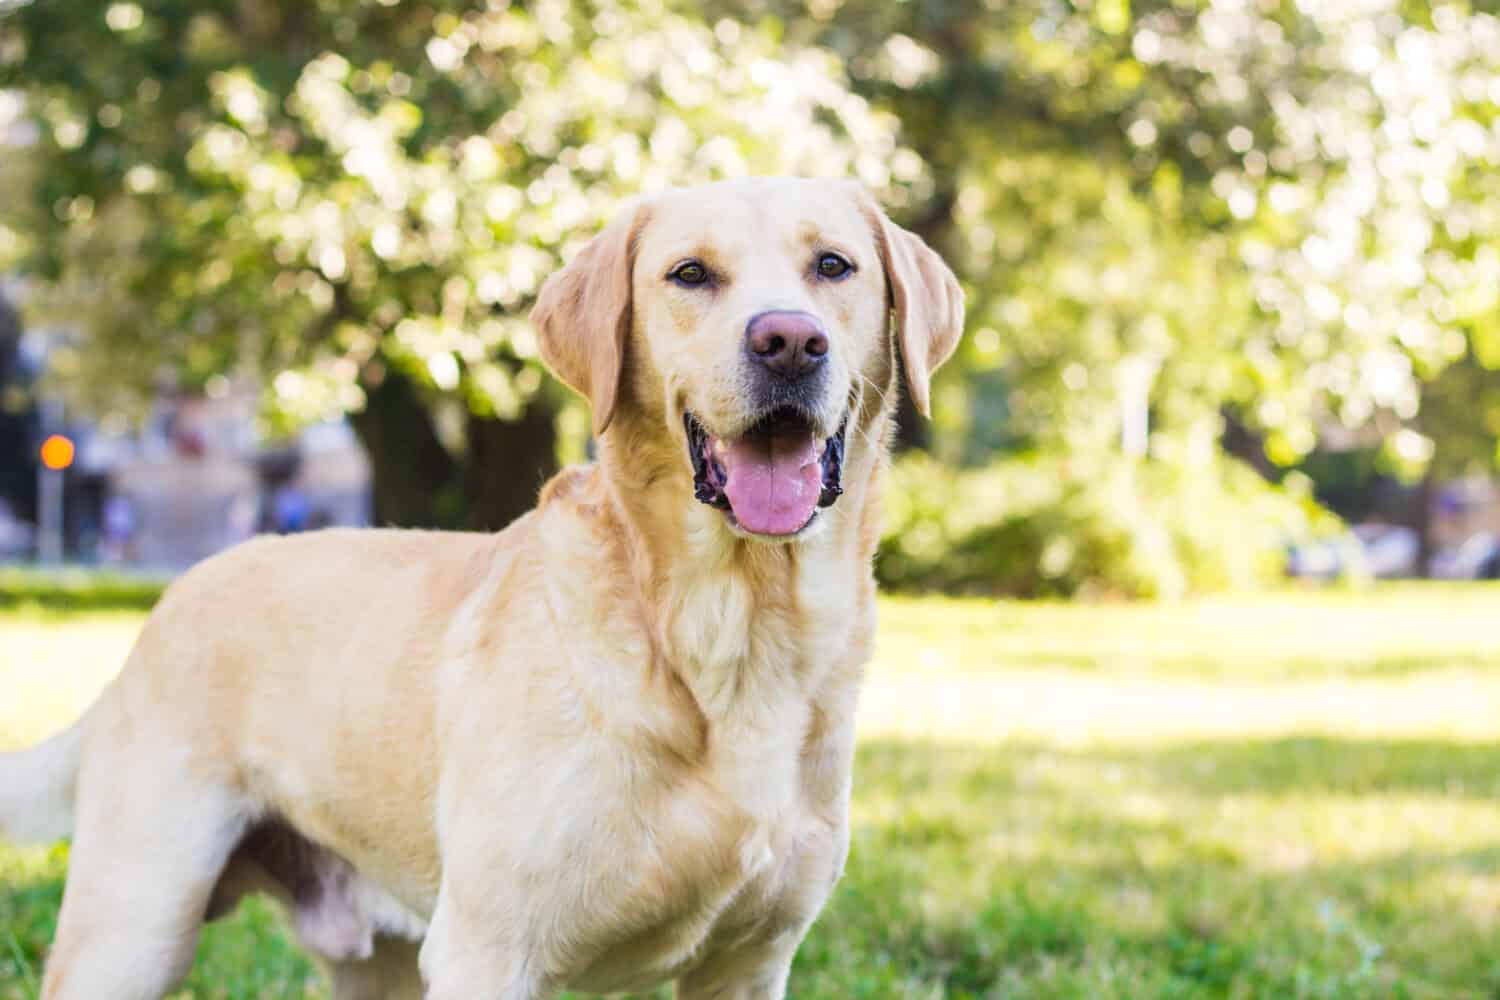 Cane labrador sorridente nel ritratto del parco cittadino.  Sorridere e alzare lo sguardo, distogliere lo sguardo